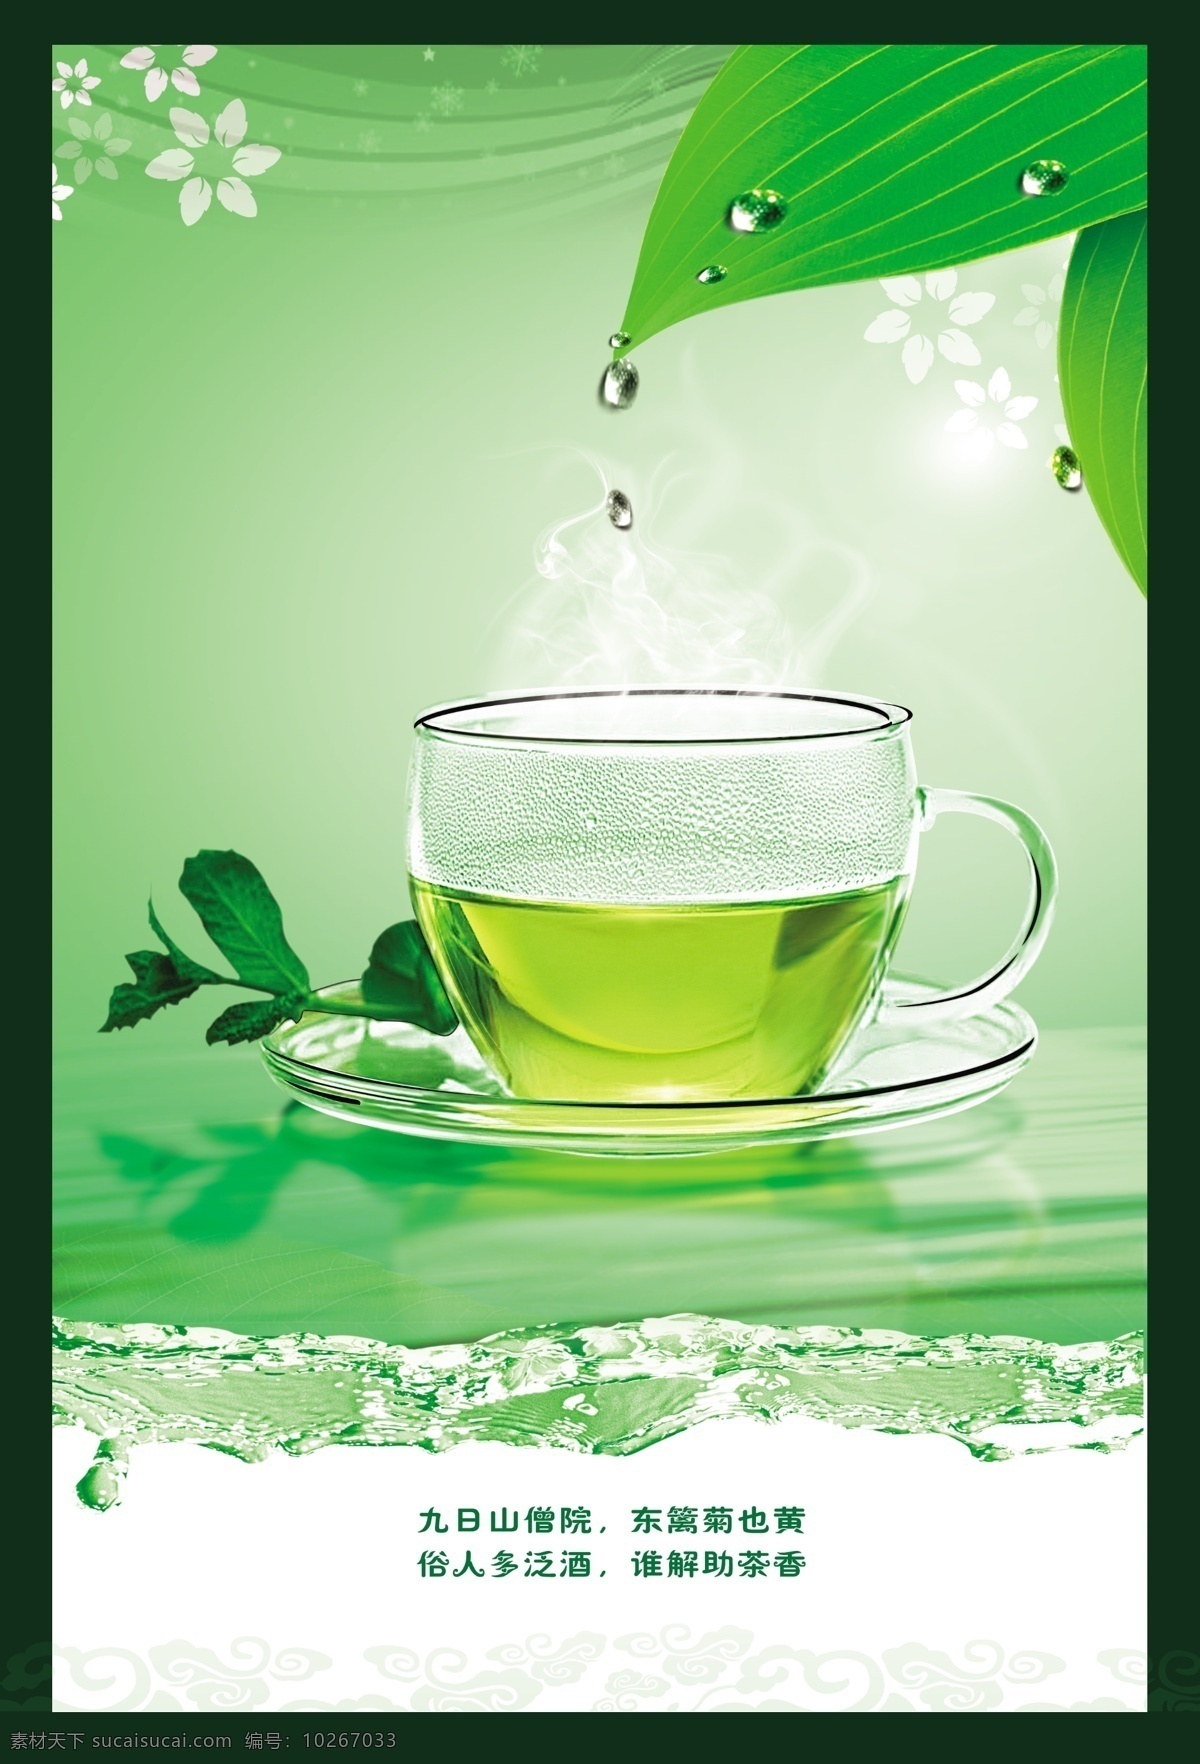 茶 茶杯 茶叶 广告设计模板 花纹 露珠 绿茶 绿色 清新 茶文化 模板下载 绿叶 源文件 其他海报设计